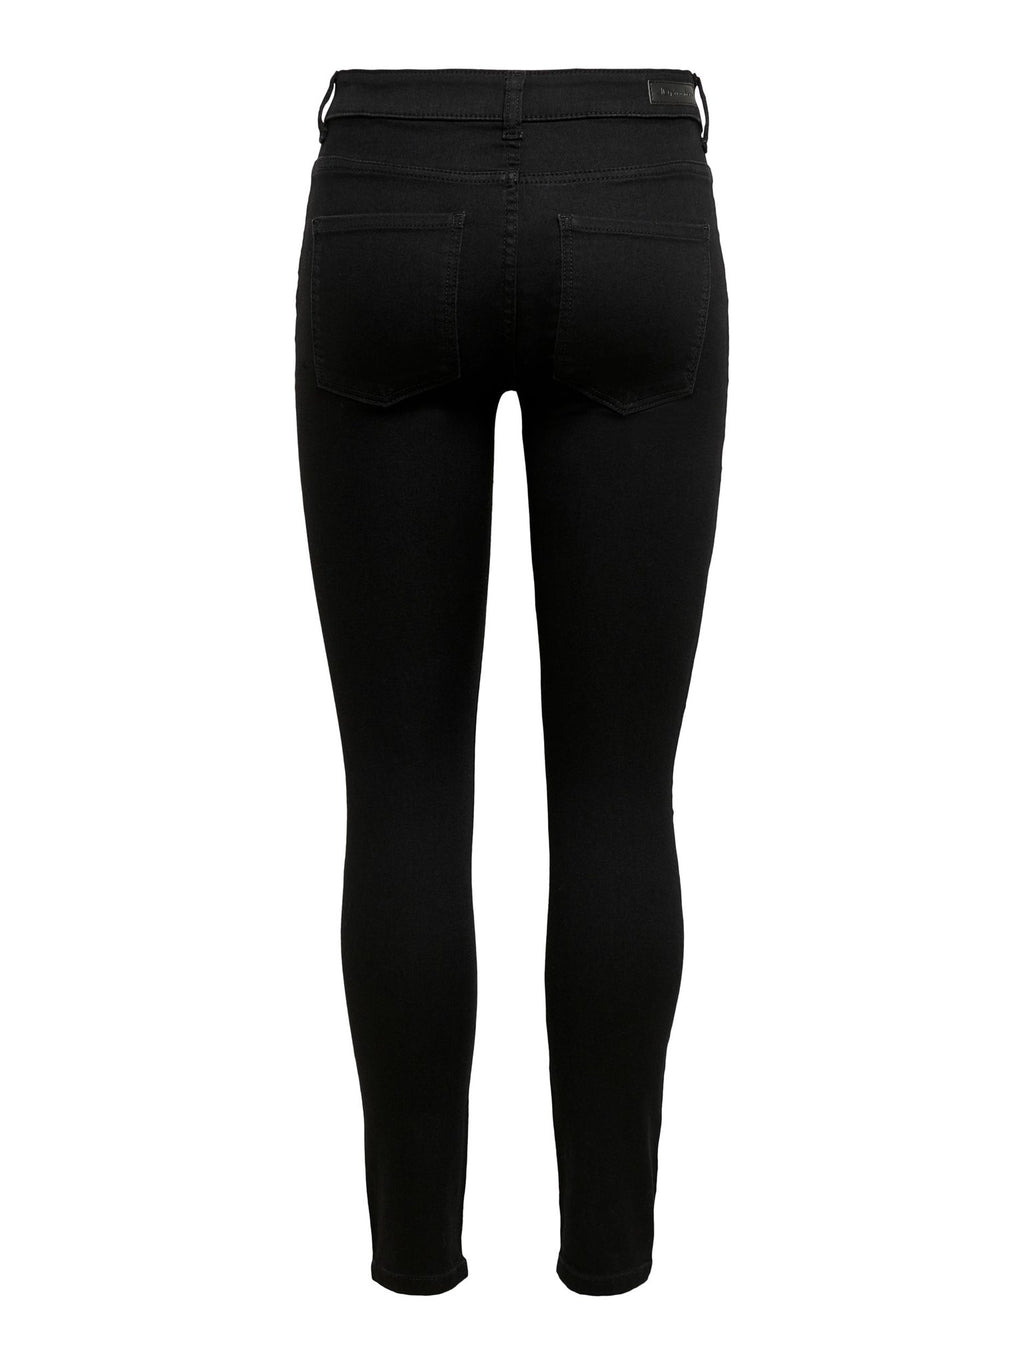 Performance Jeans - Black (mid-waist)